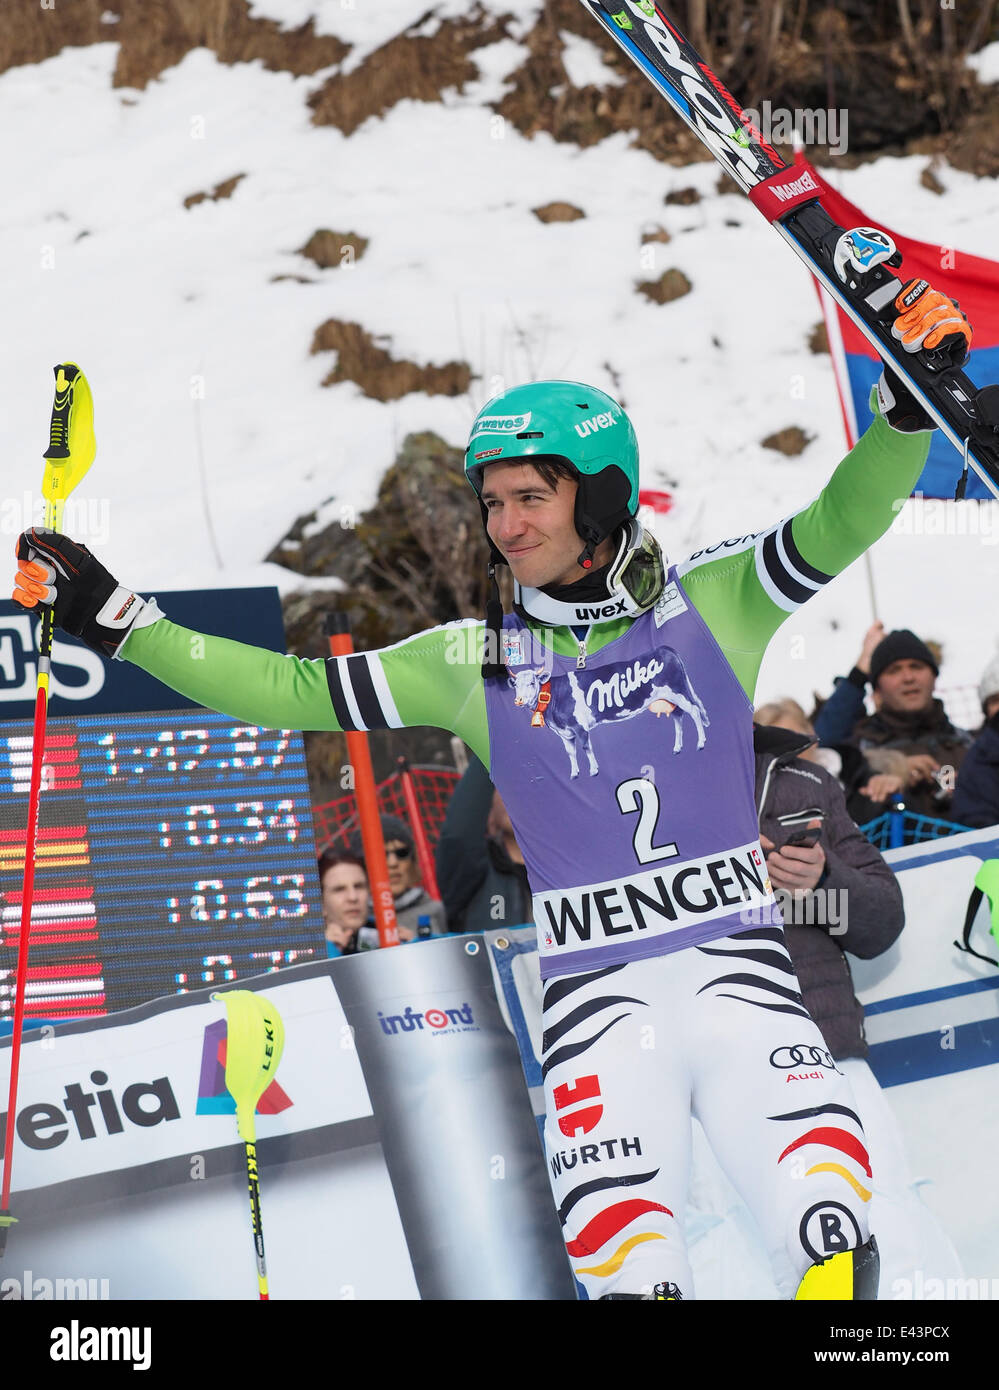 Hombre de FIS de la Copa del Mundo de Esquí Alpino en Wengen Slalom Featuring: Felix Neureuther donde: Wengen, Suiza Cuando: 19 Jan 2014 Foto de stock